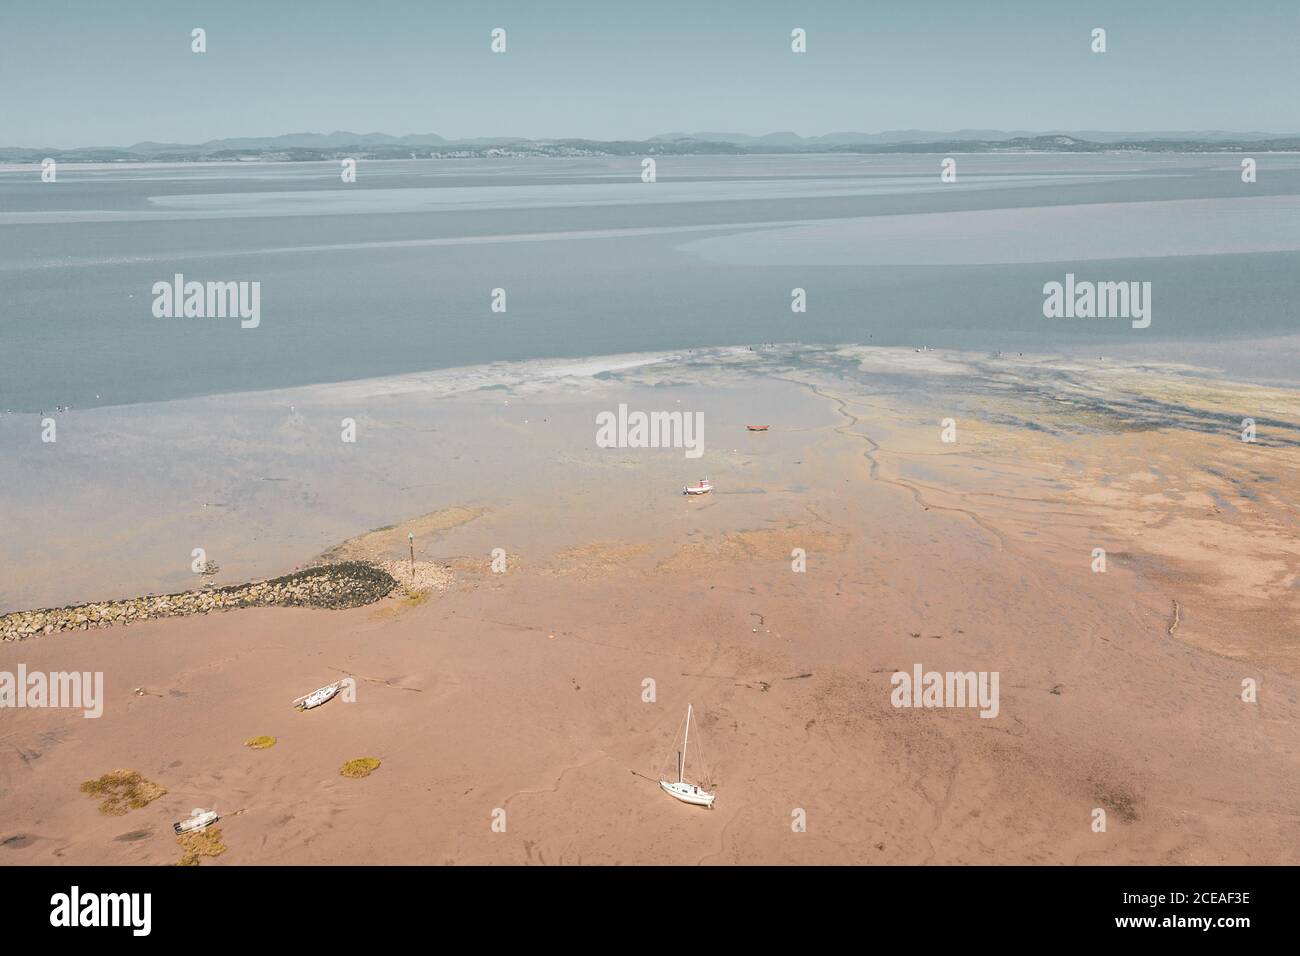 Spiaggia di sabbia a bassa marea con catena montuosa sullo sfondo. Morecambe in Lancashire, Regno Unito Foto Stock